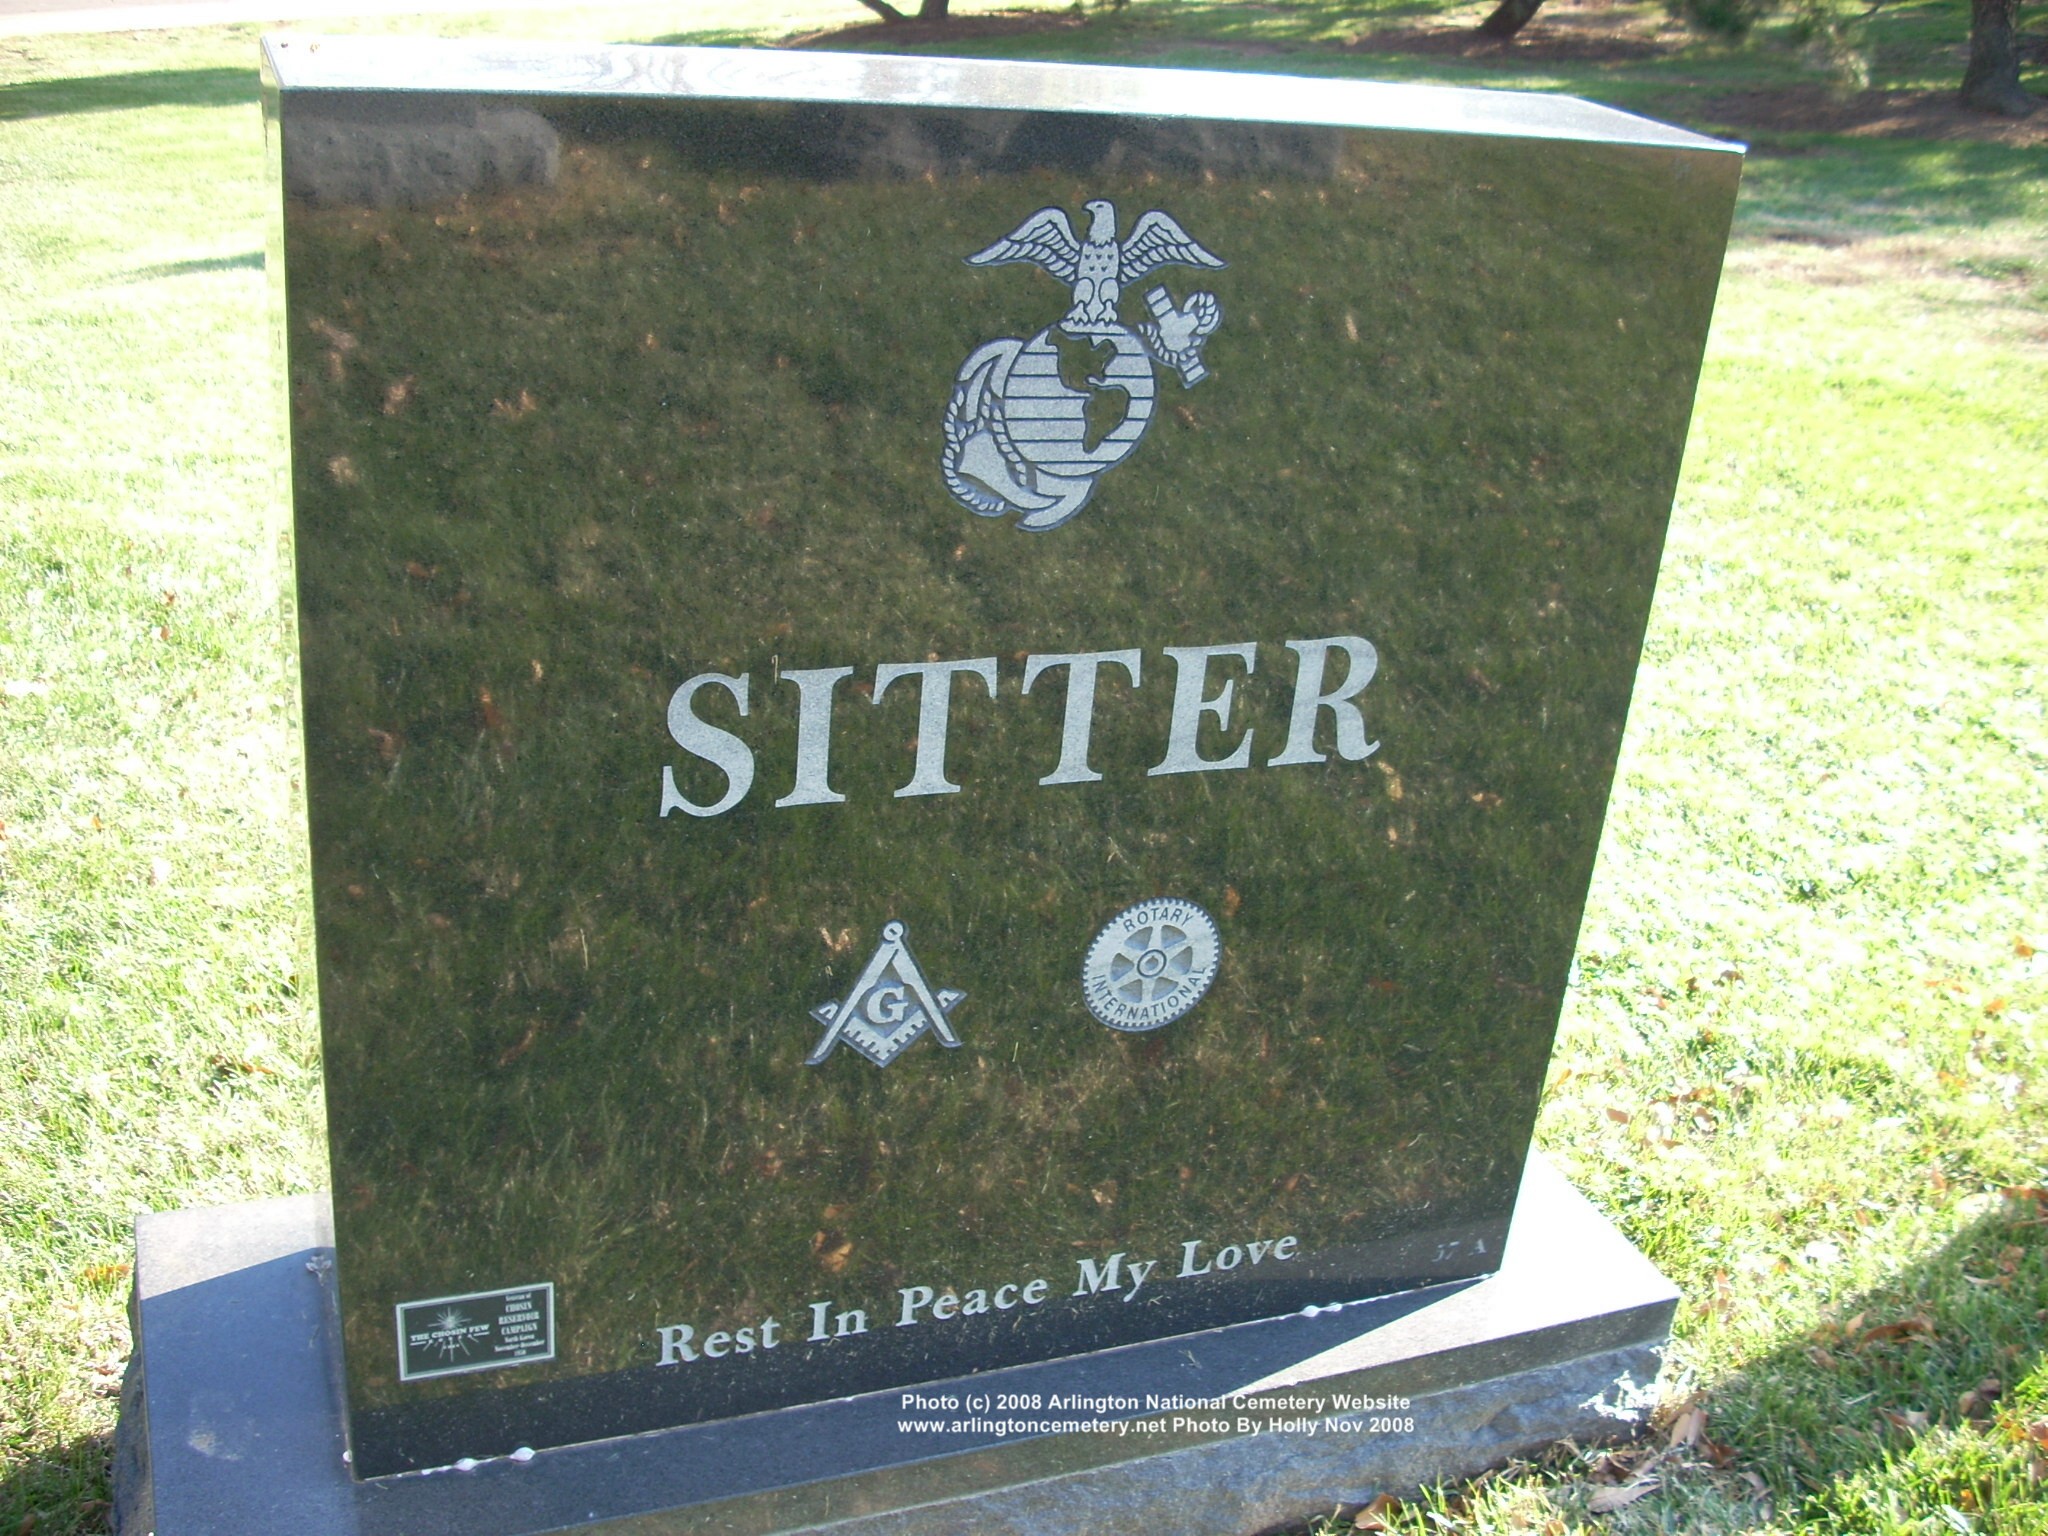 clsitter-gravesite-photo-november-2008-002